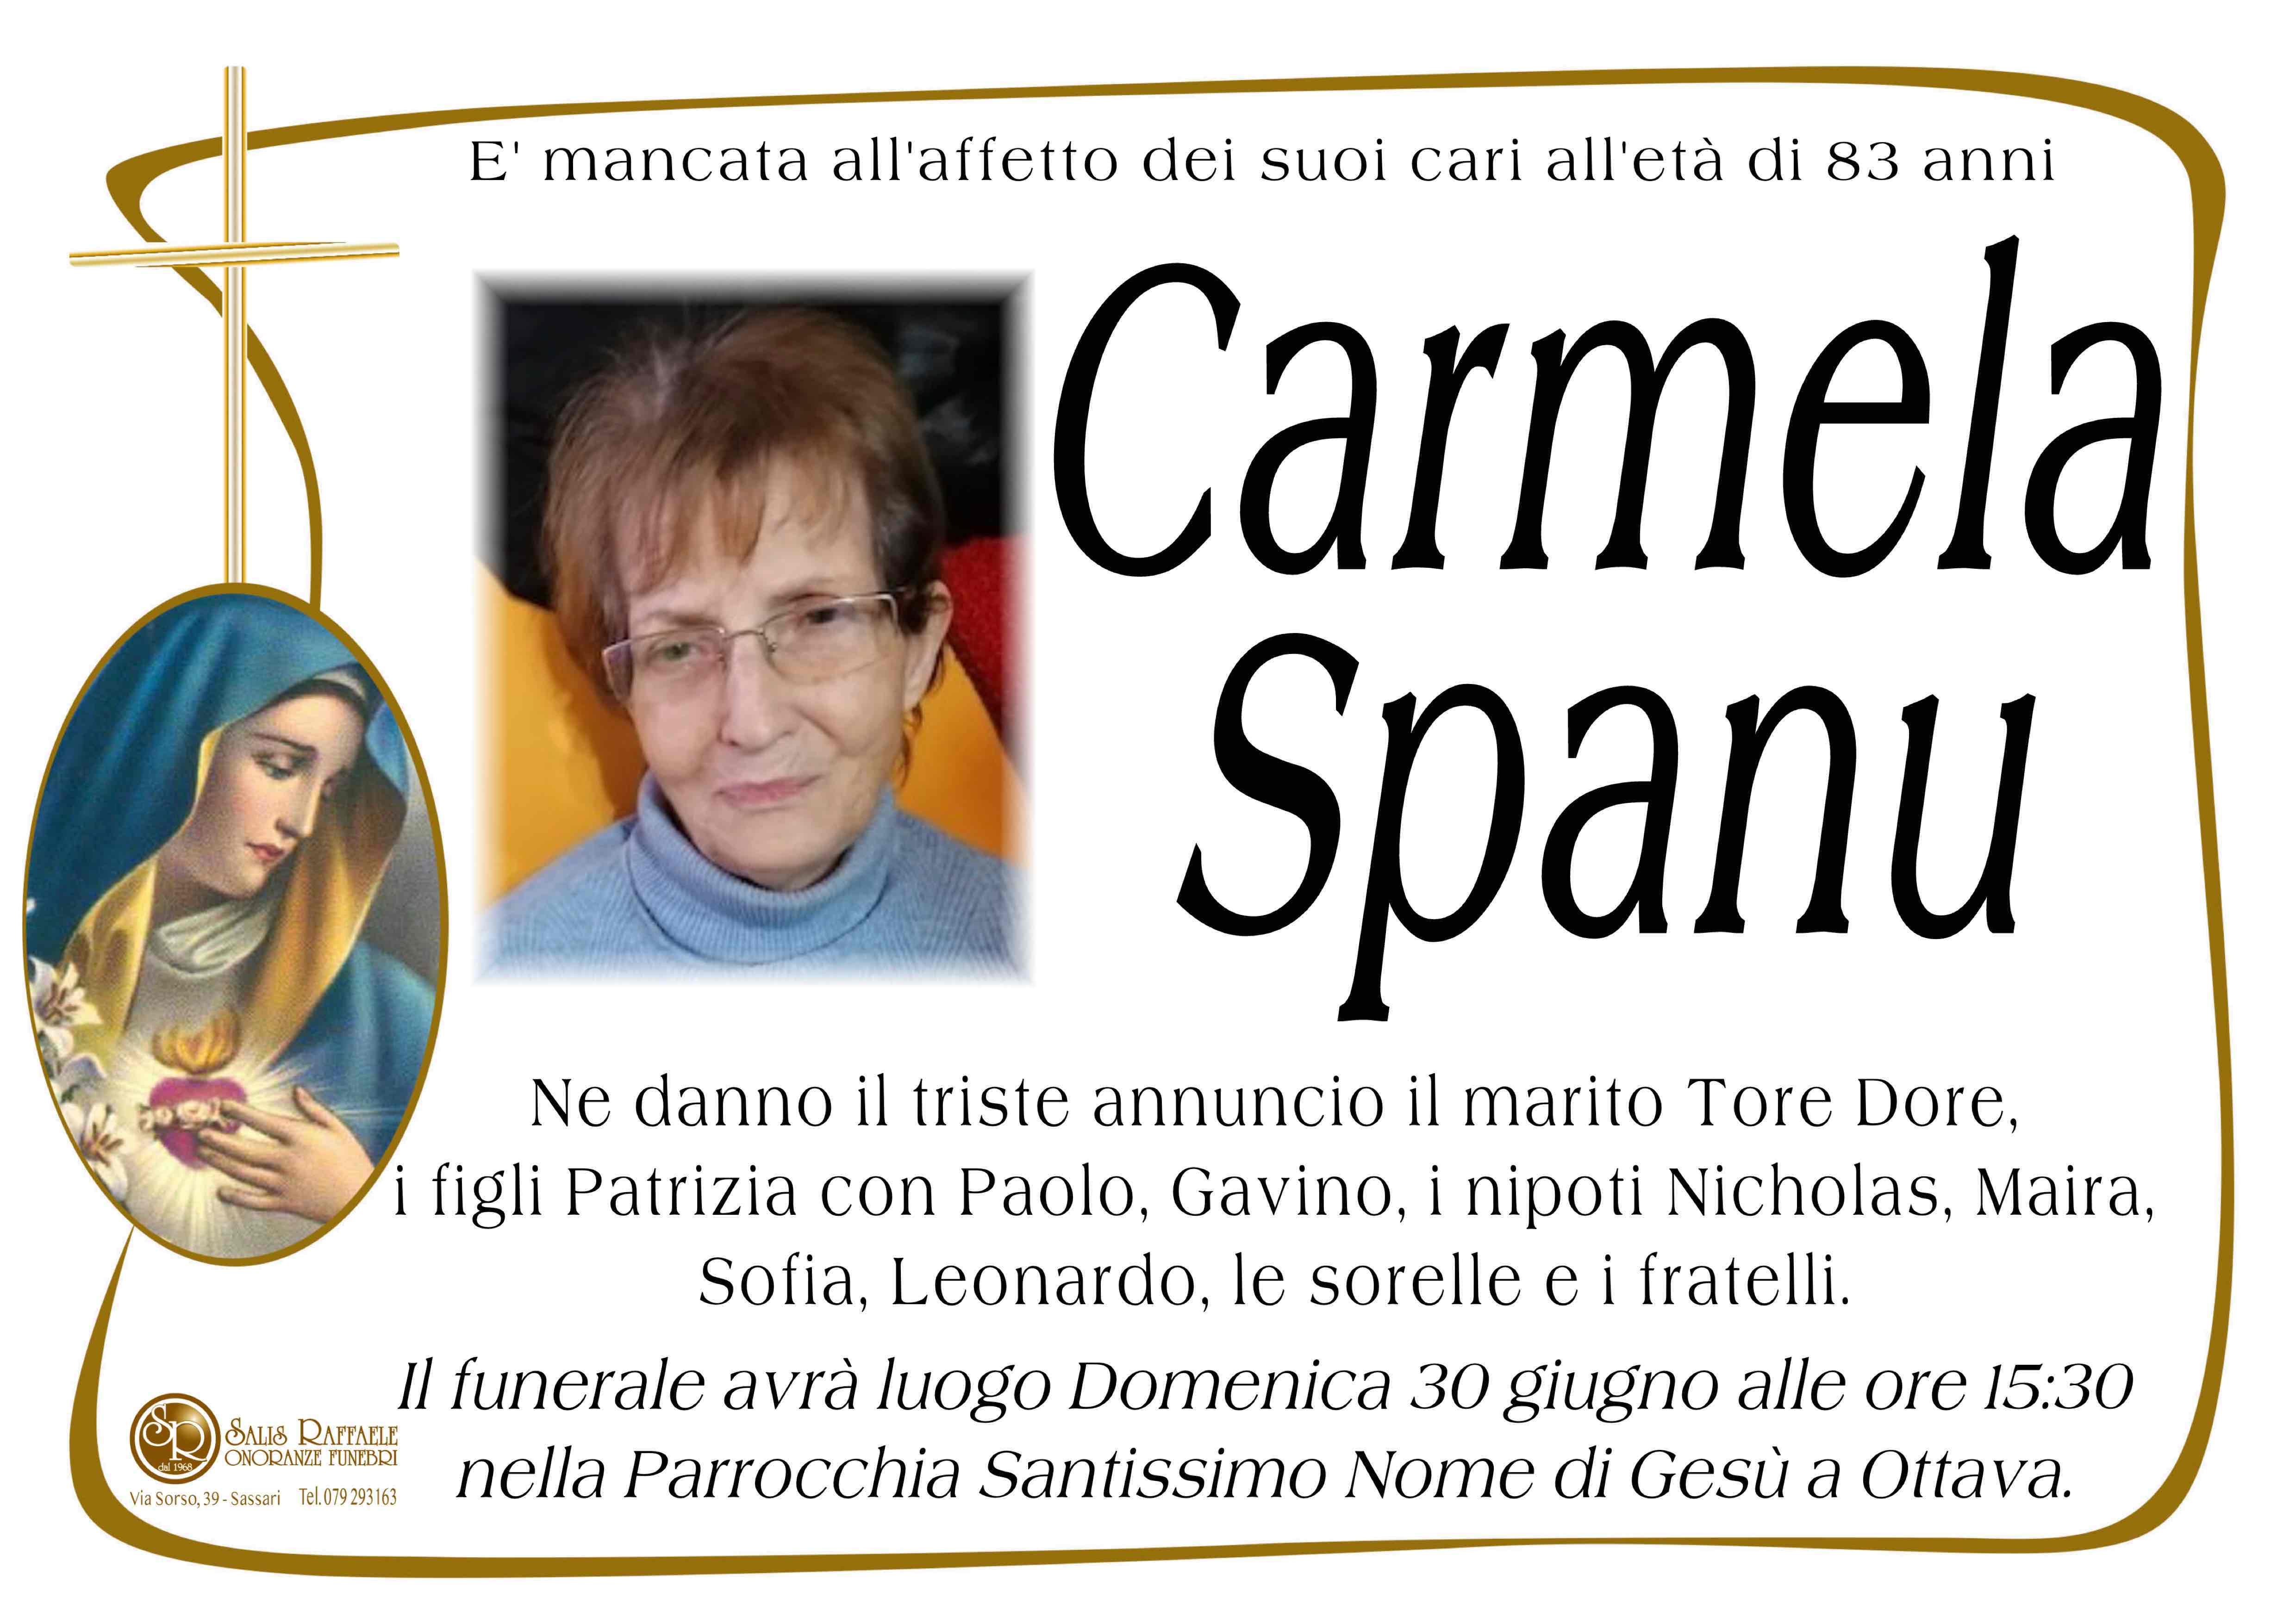 Carmela Spanu